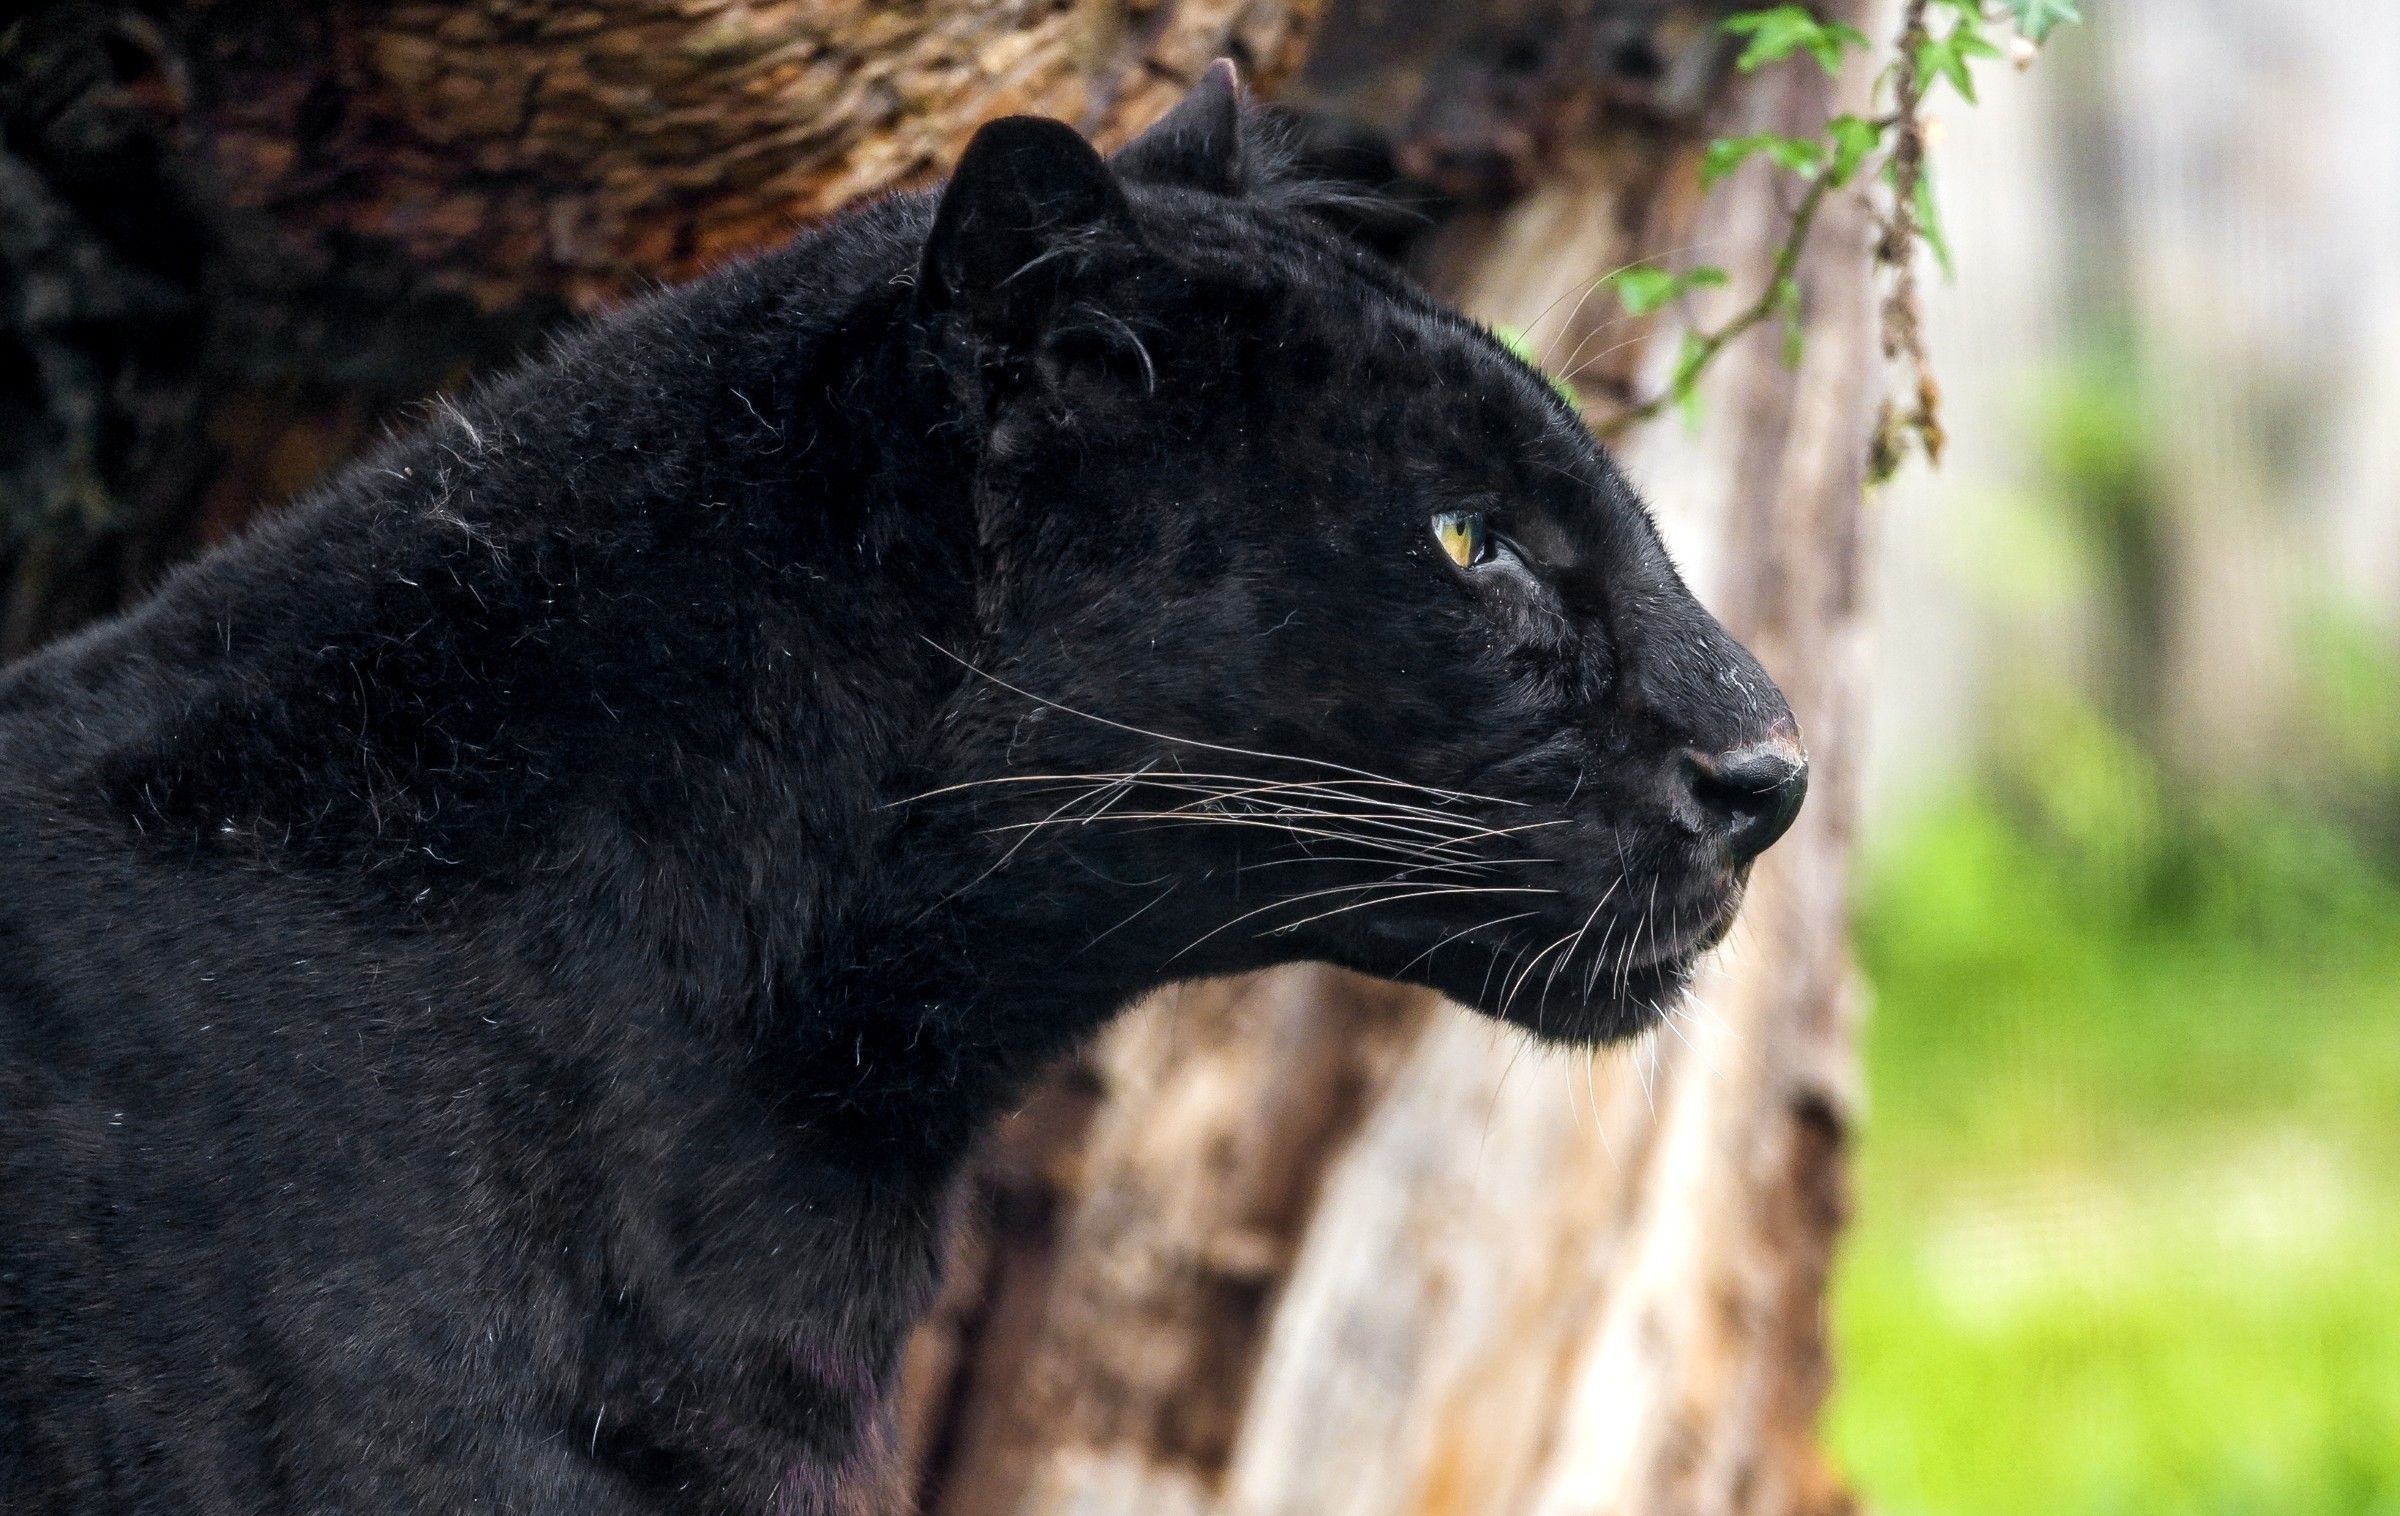 Black Panther Animal Profile - 2400x1516 Wallpaper 